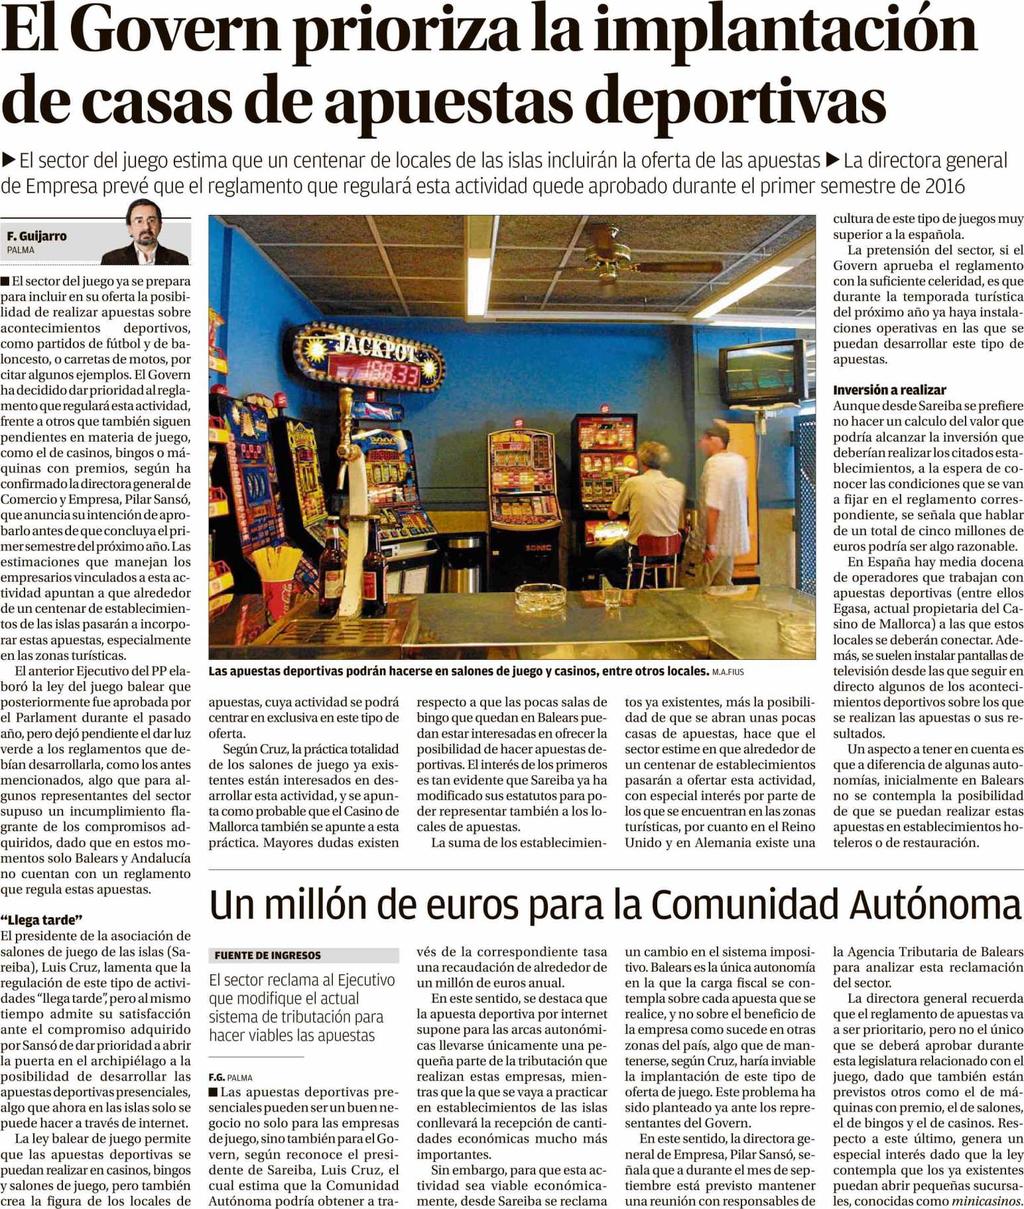 Diario de Mallorca PALMA DE MALLORCA Prensa: Tirada: Difusión: 12/08/15 Diaria 16.781 Ejemplares 14.